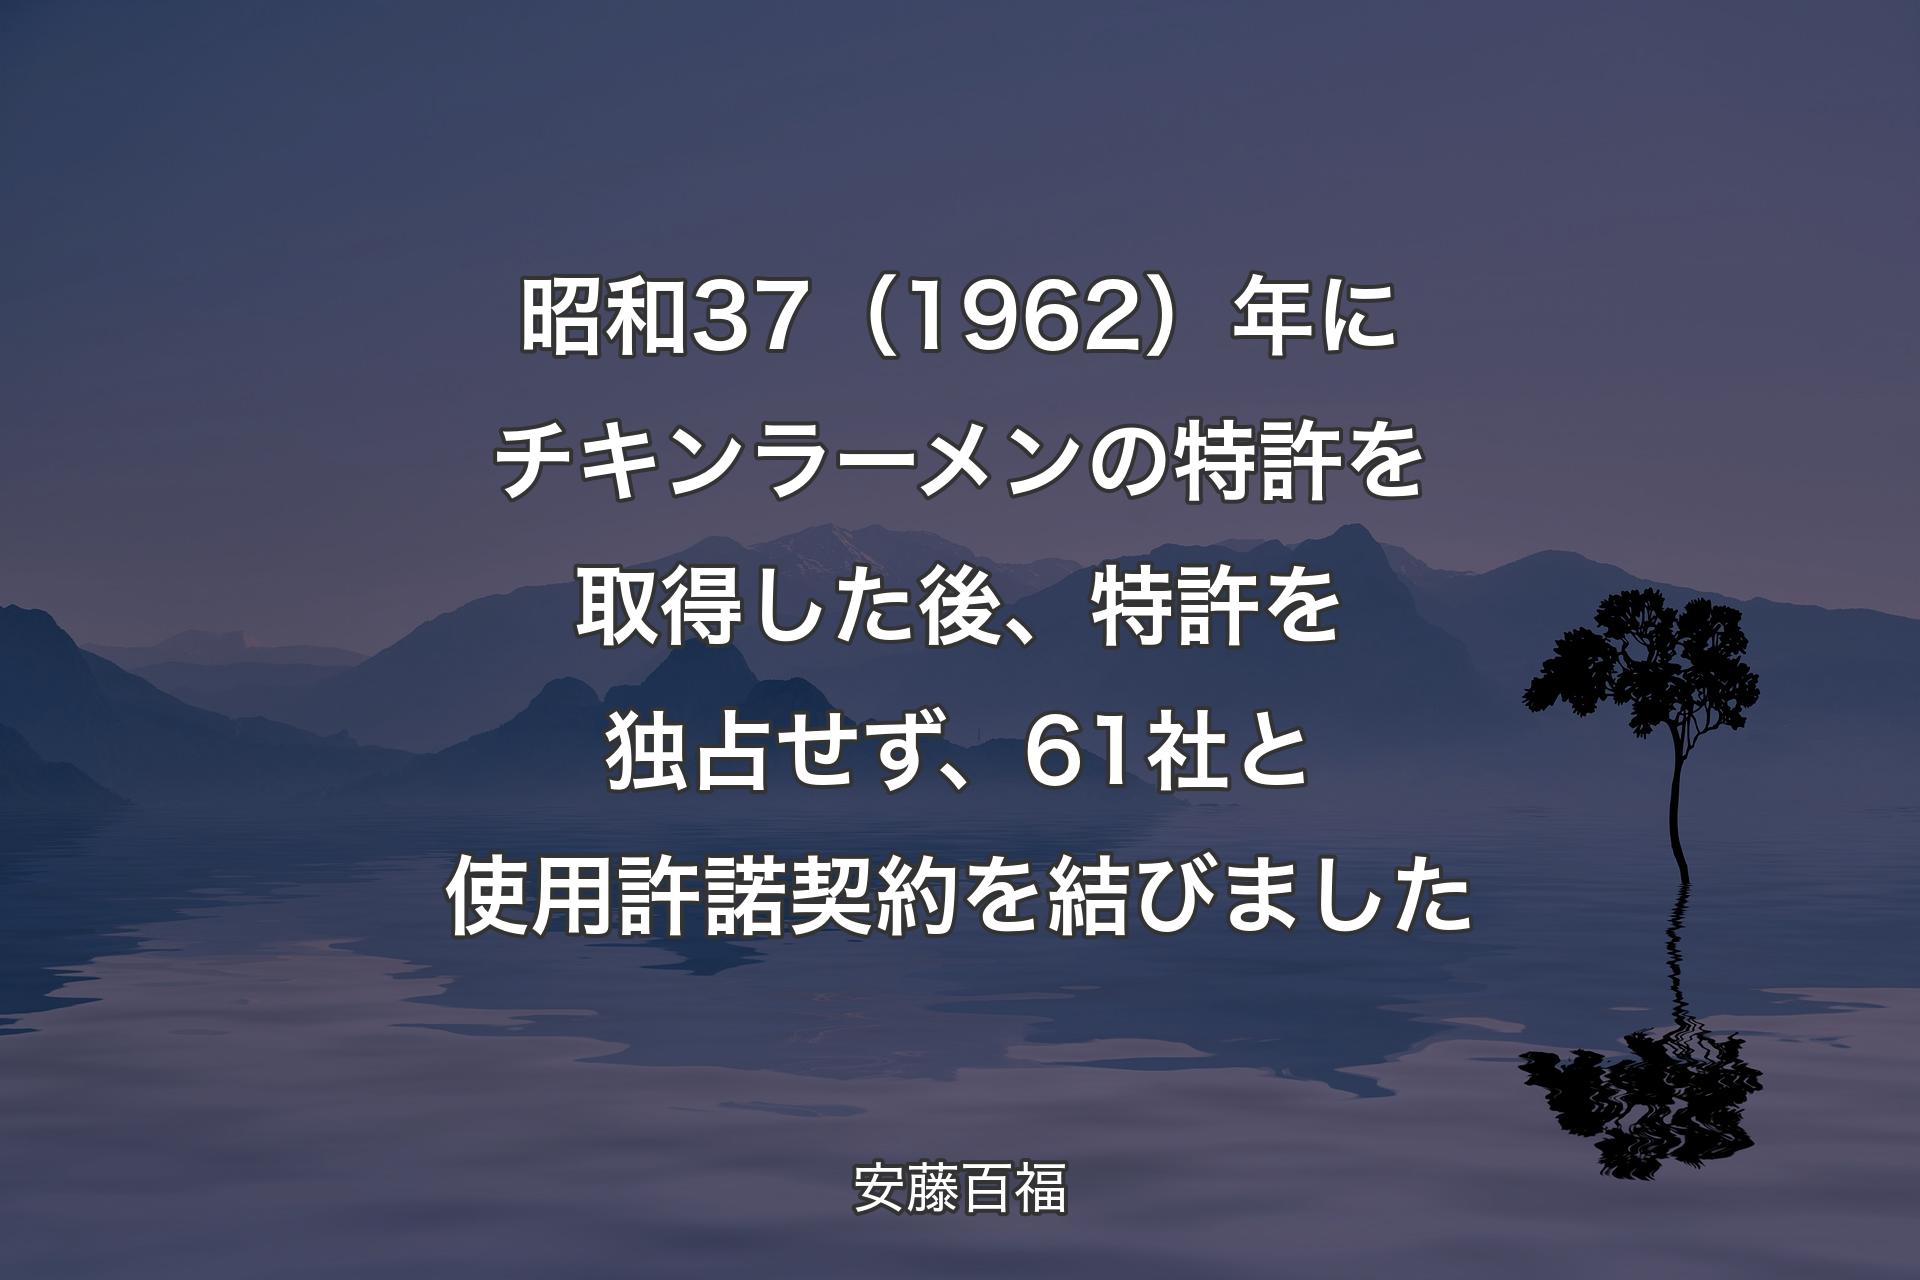 【背景4】昭和37（1962）年にチキンラーメンの特許を取得した後、特許を独占せず、61社と使用許諾契約を結びました - 安藤百福